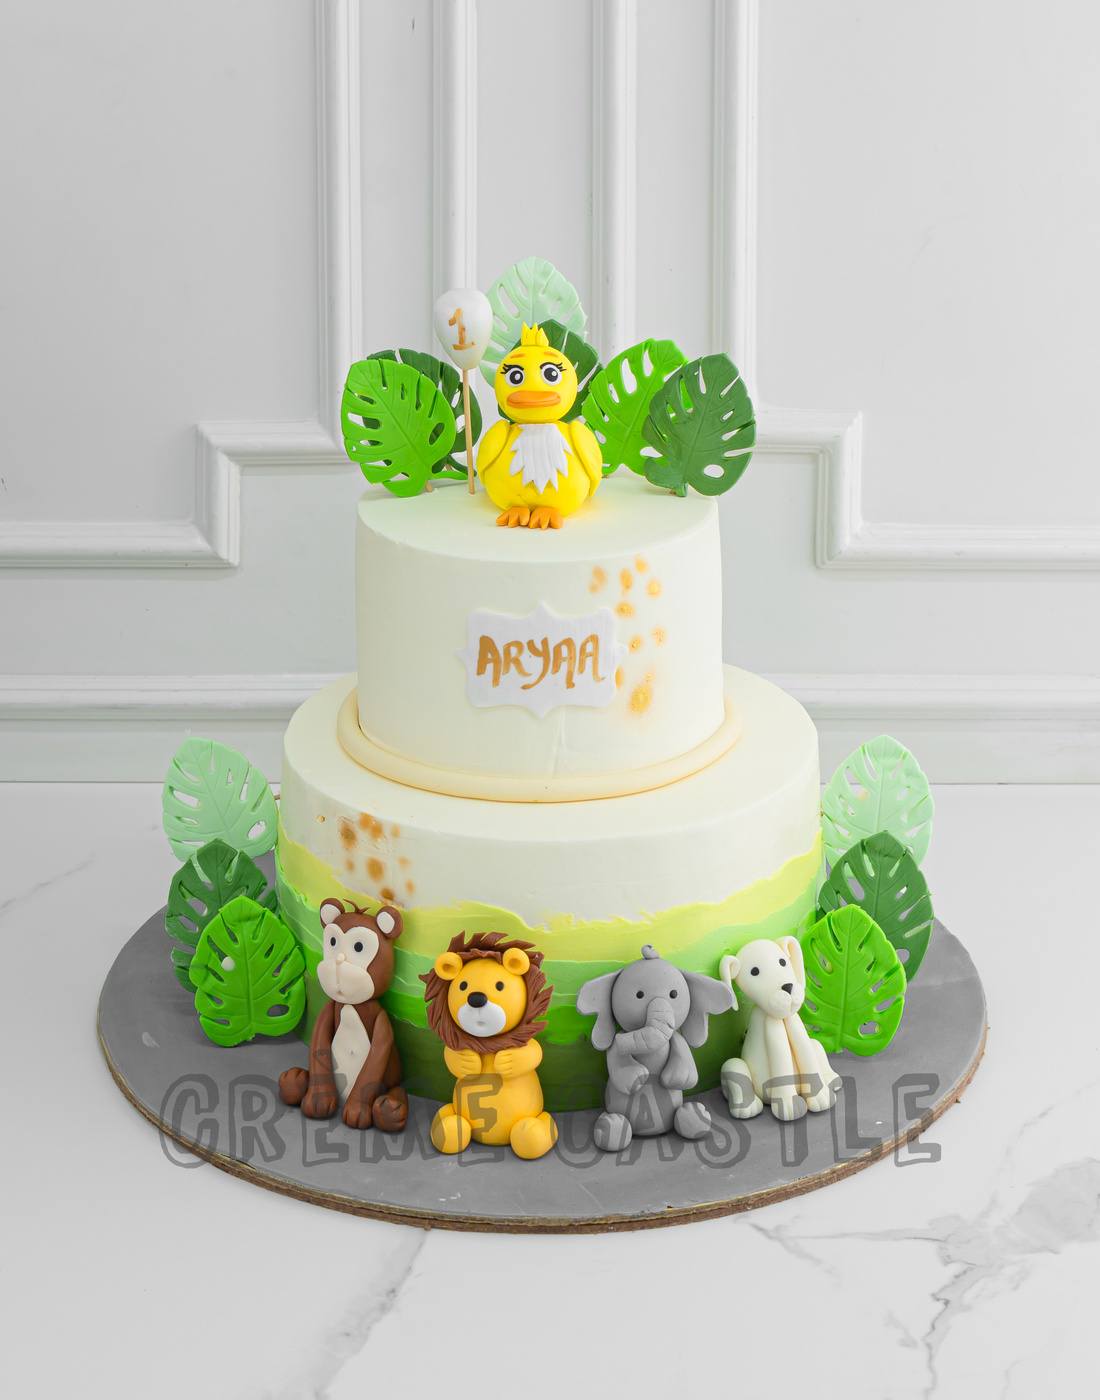 Zoo animal birthday cake | Jenny Wenny | Flickr